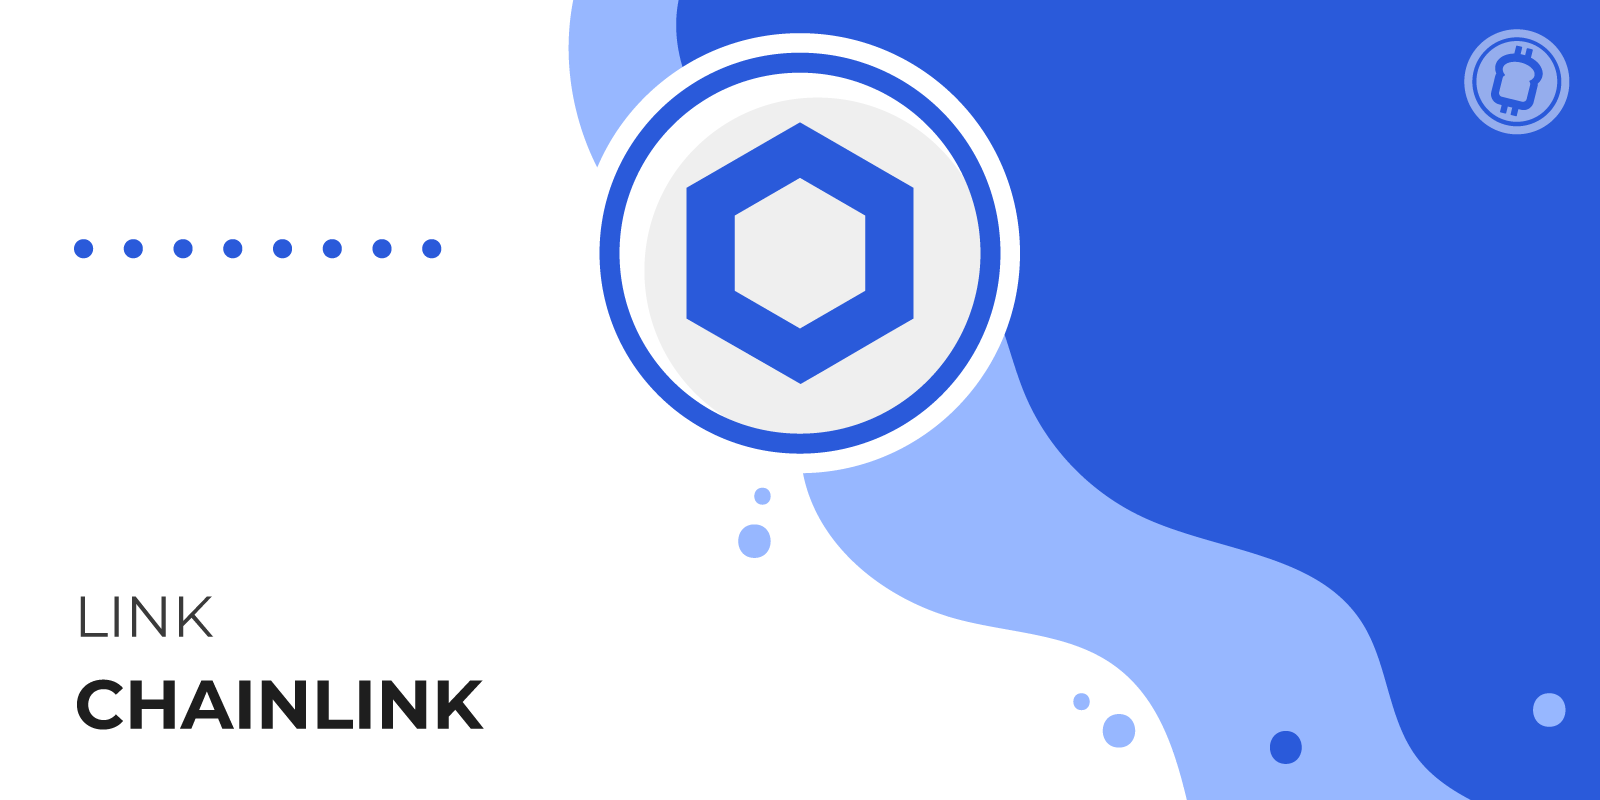 Chainlink (LINK), le réseau d'oracles décentralisé pour la blockchain